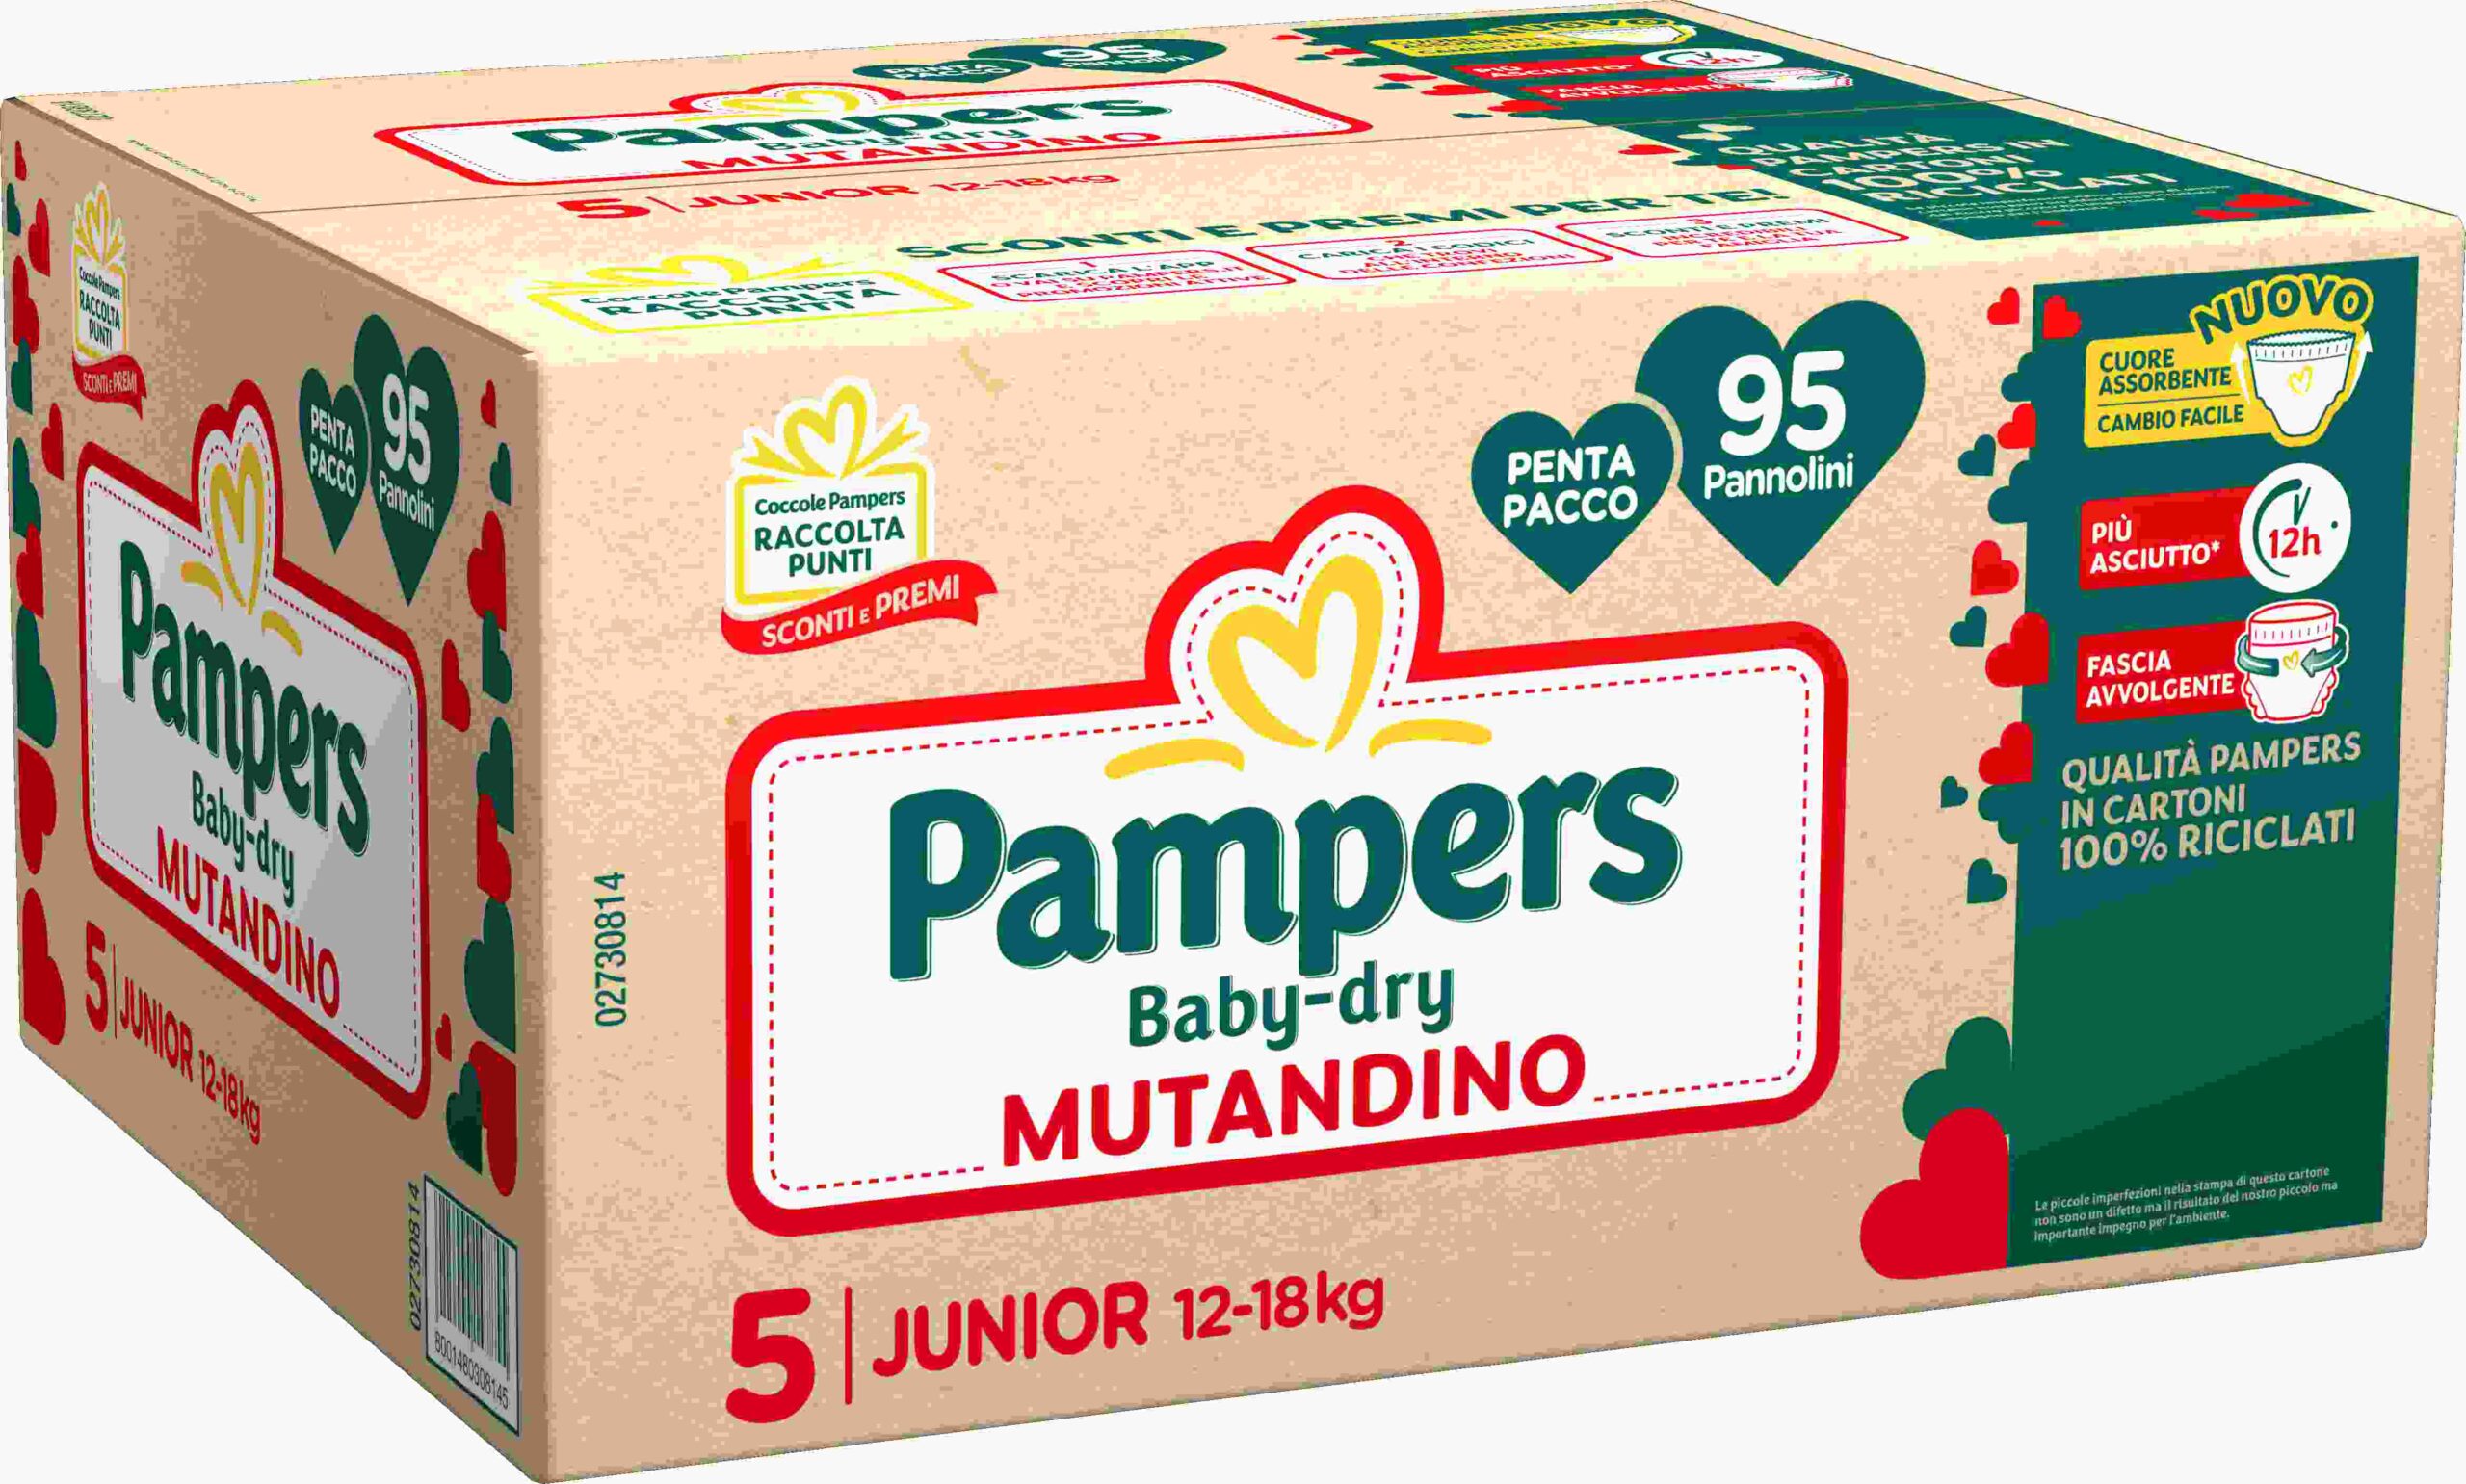 Pampers baby-dry mutandino penta junior 95 pz